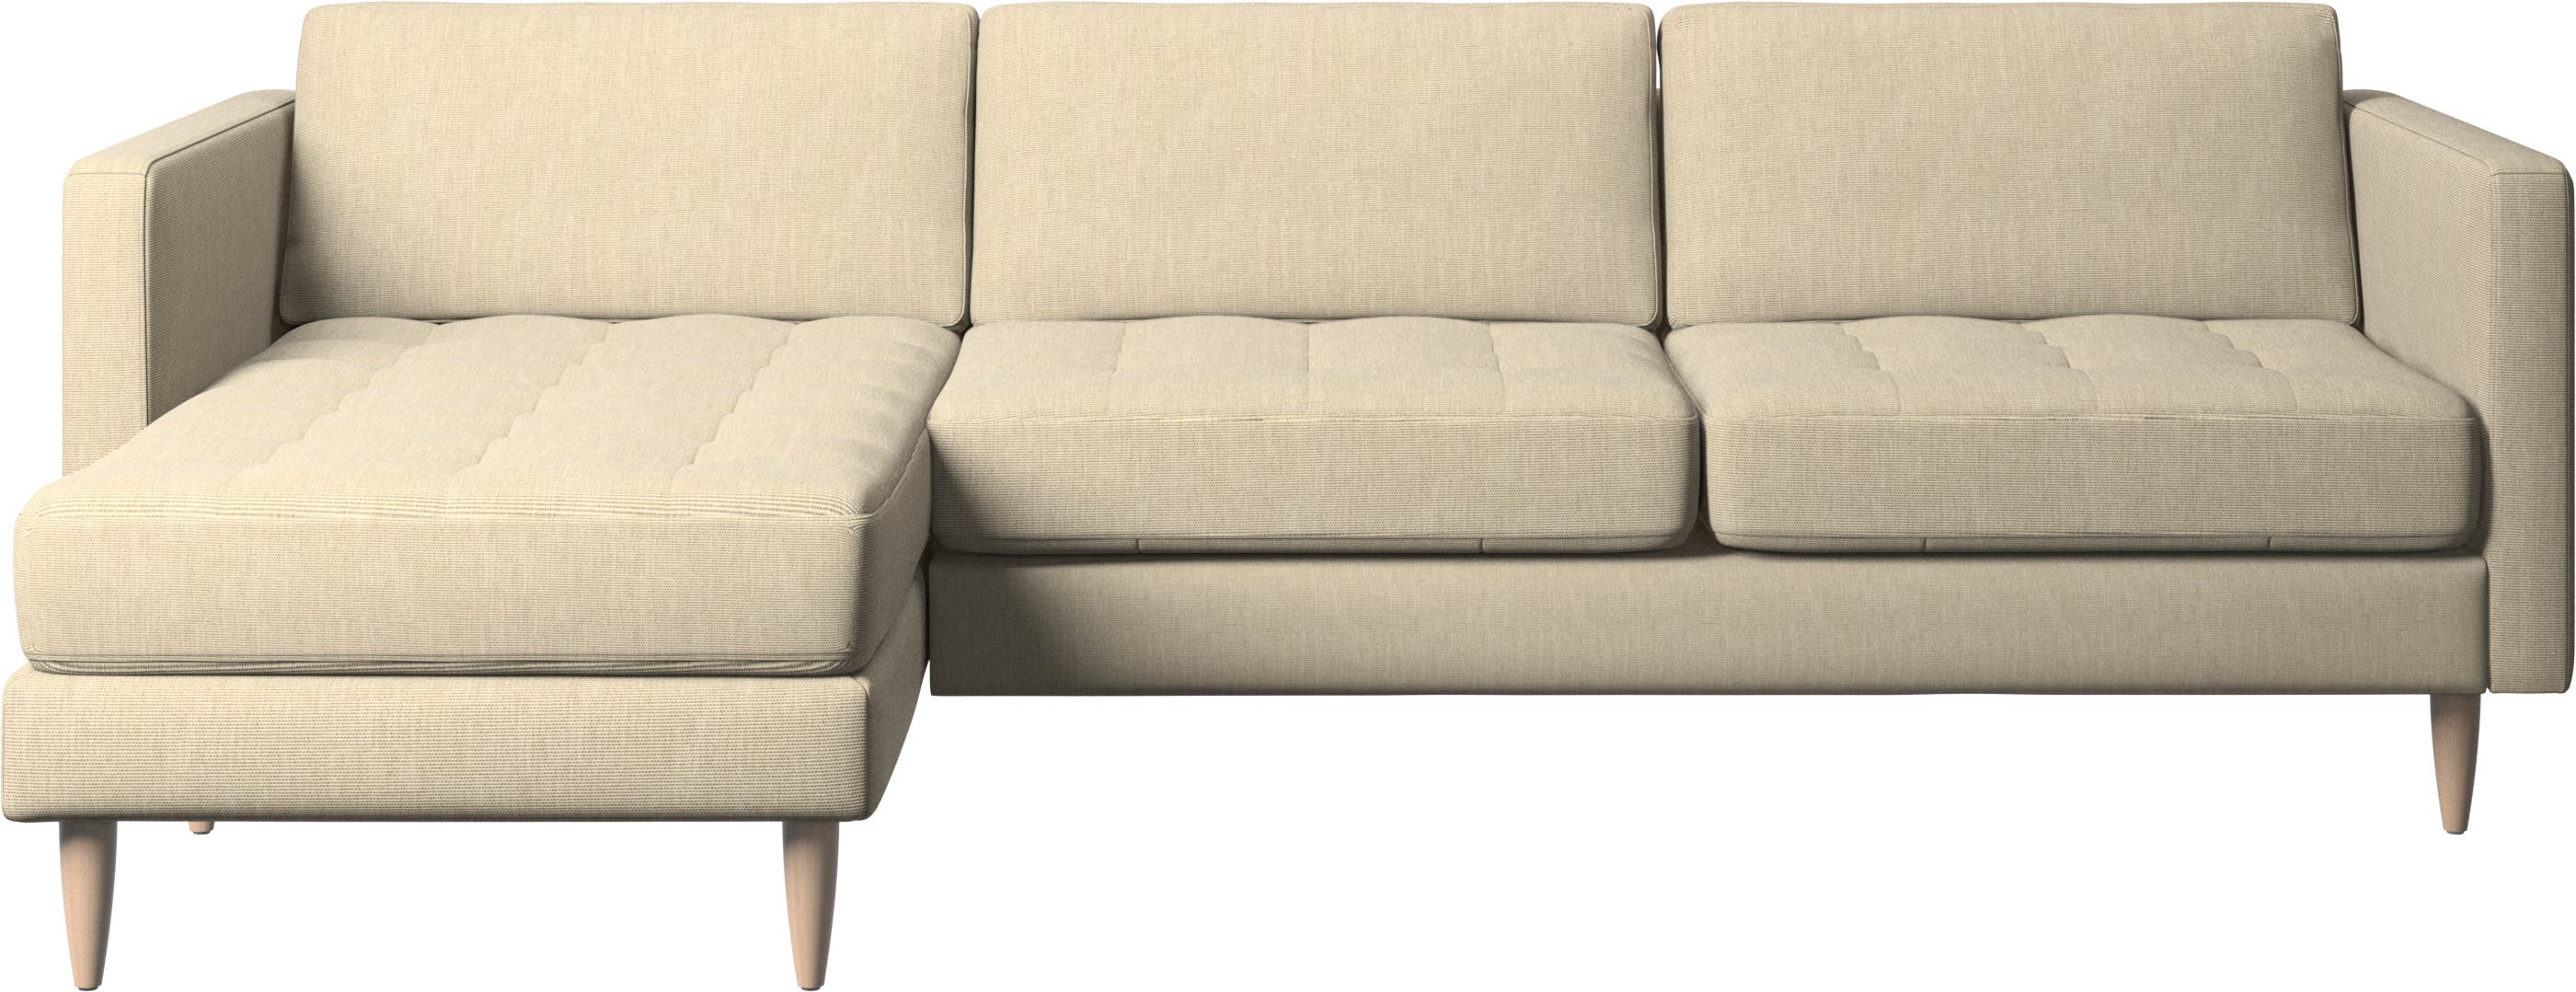 Osaka Sofa mit Ruhemodul, getuftete Sitzfläche